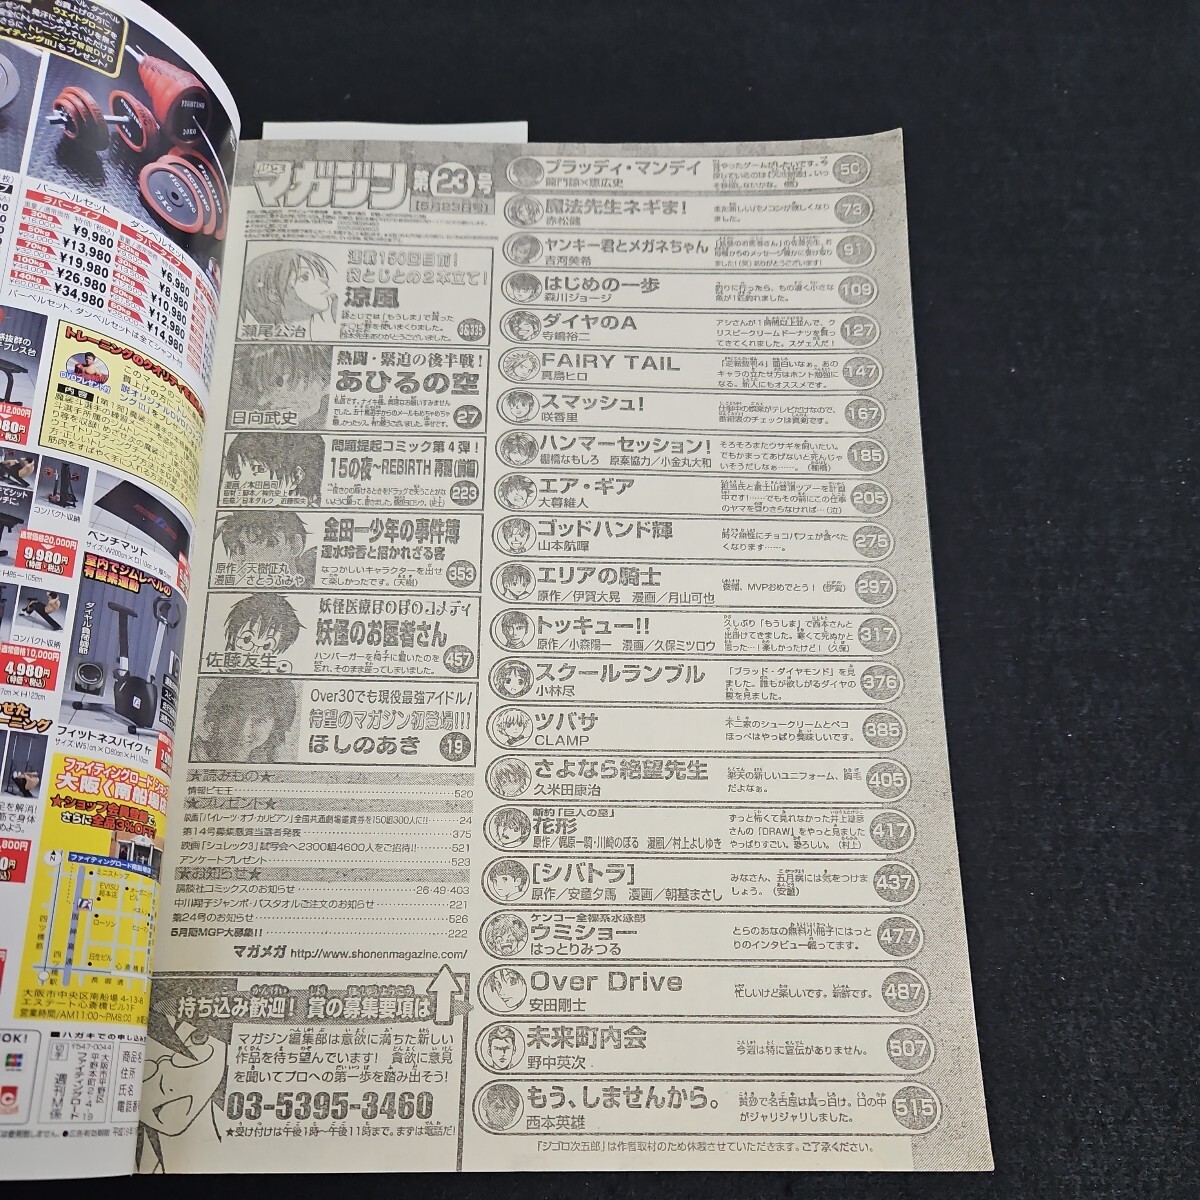 い40-005 本/週刊少年マガジン 平成19年5月23日発行_画像2